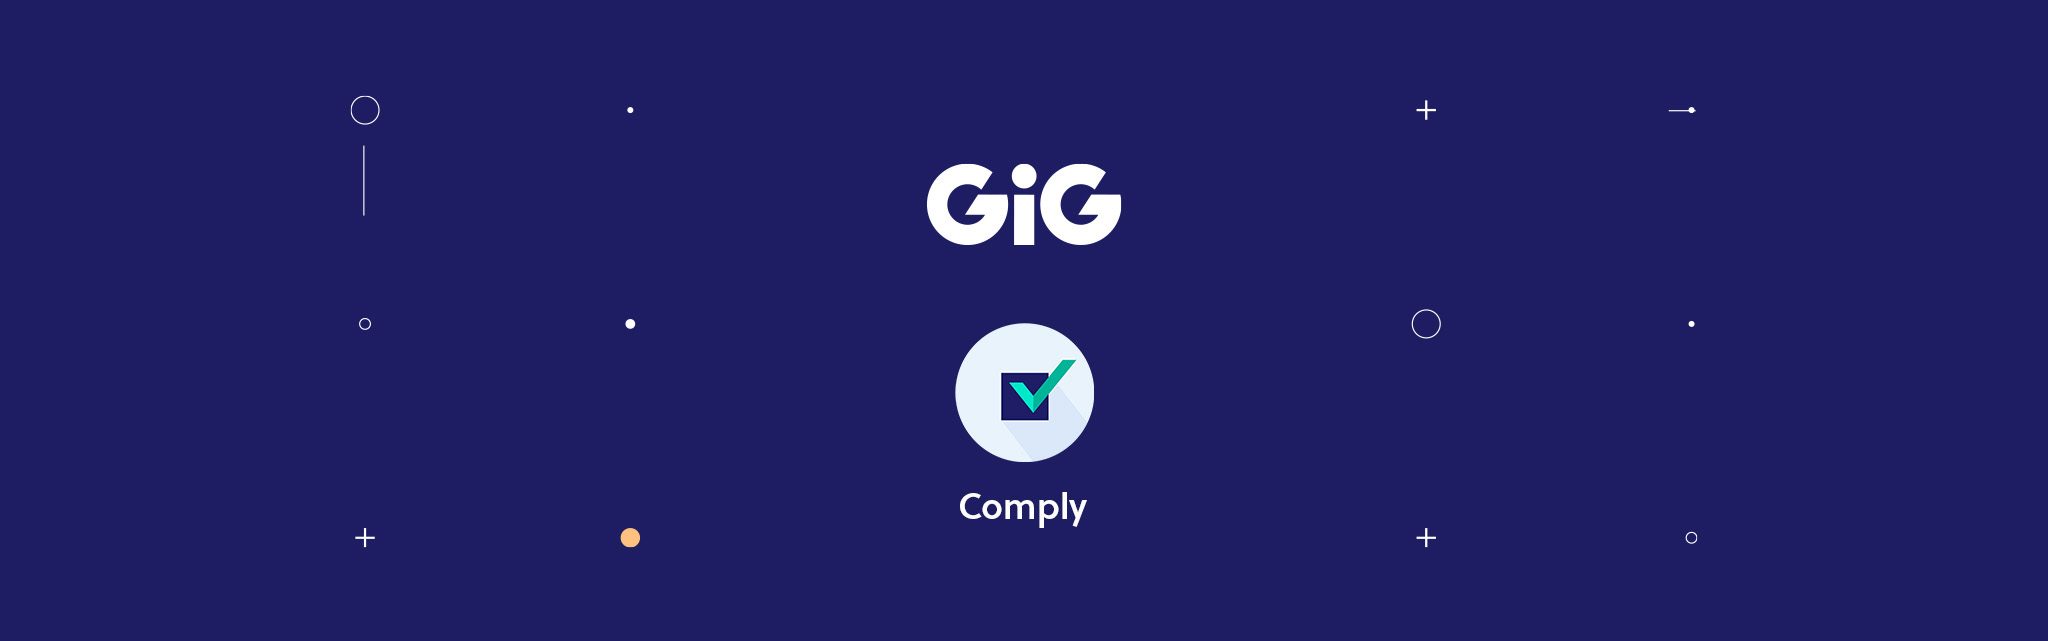 GiG Comply